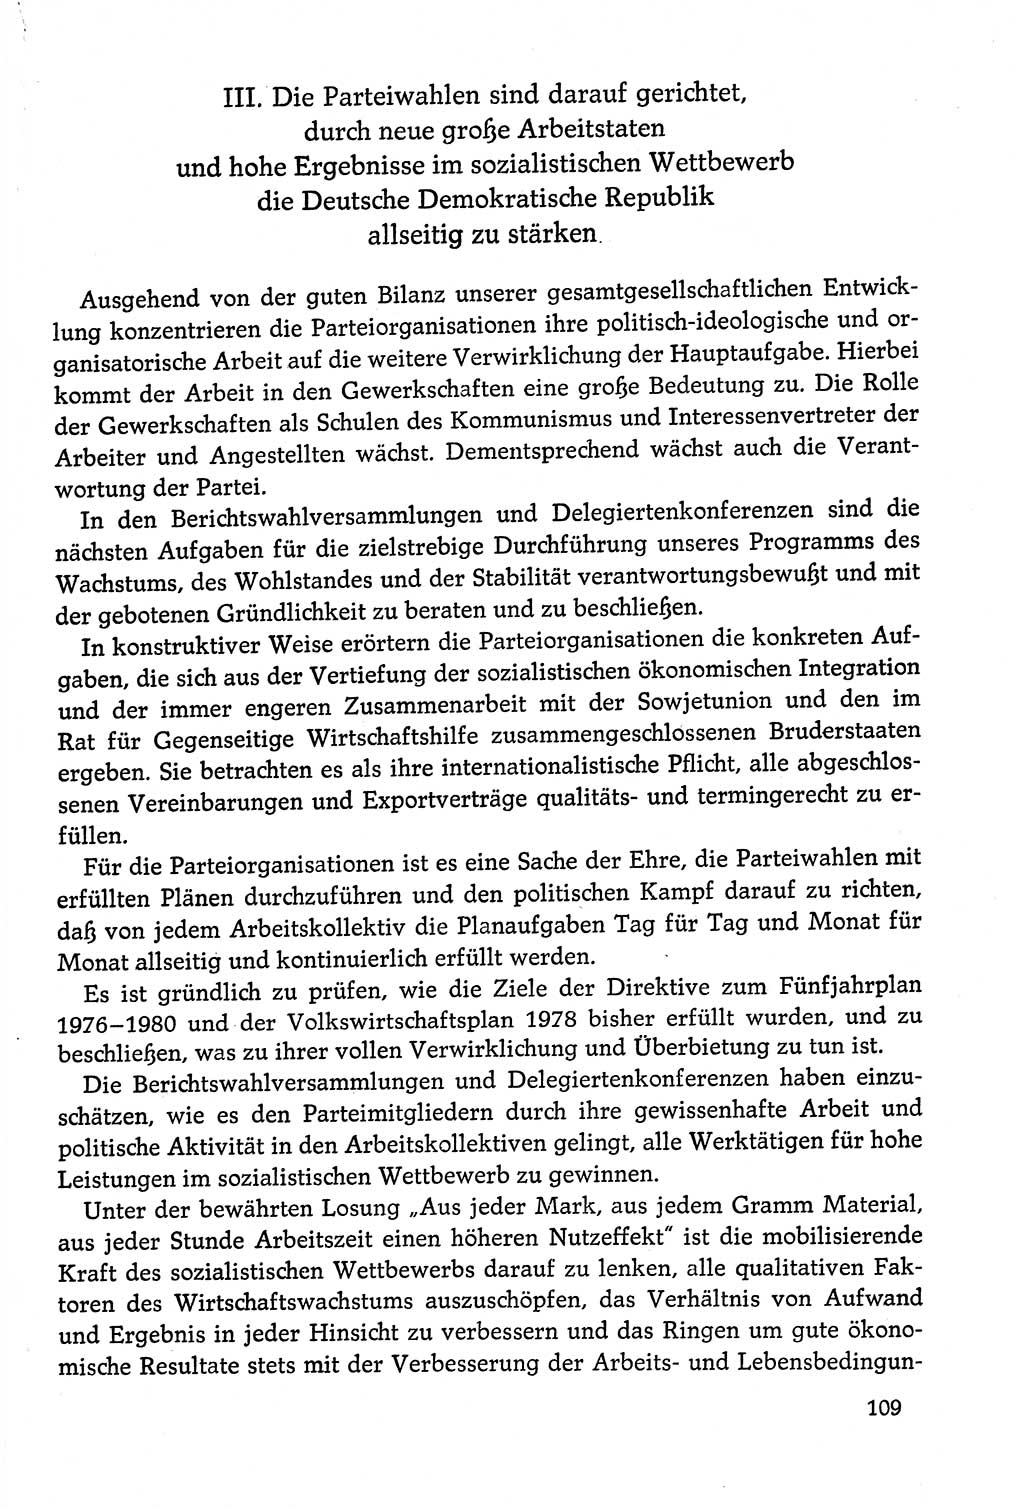 Dokumente der Sozialistischen Einheitspartei Deutschlands (SED) [Deutsche Demokratische Republik (DDR)] 1978-1979, Seite 109 (Dok. SED DDR 1978-1979, S. 109)